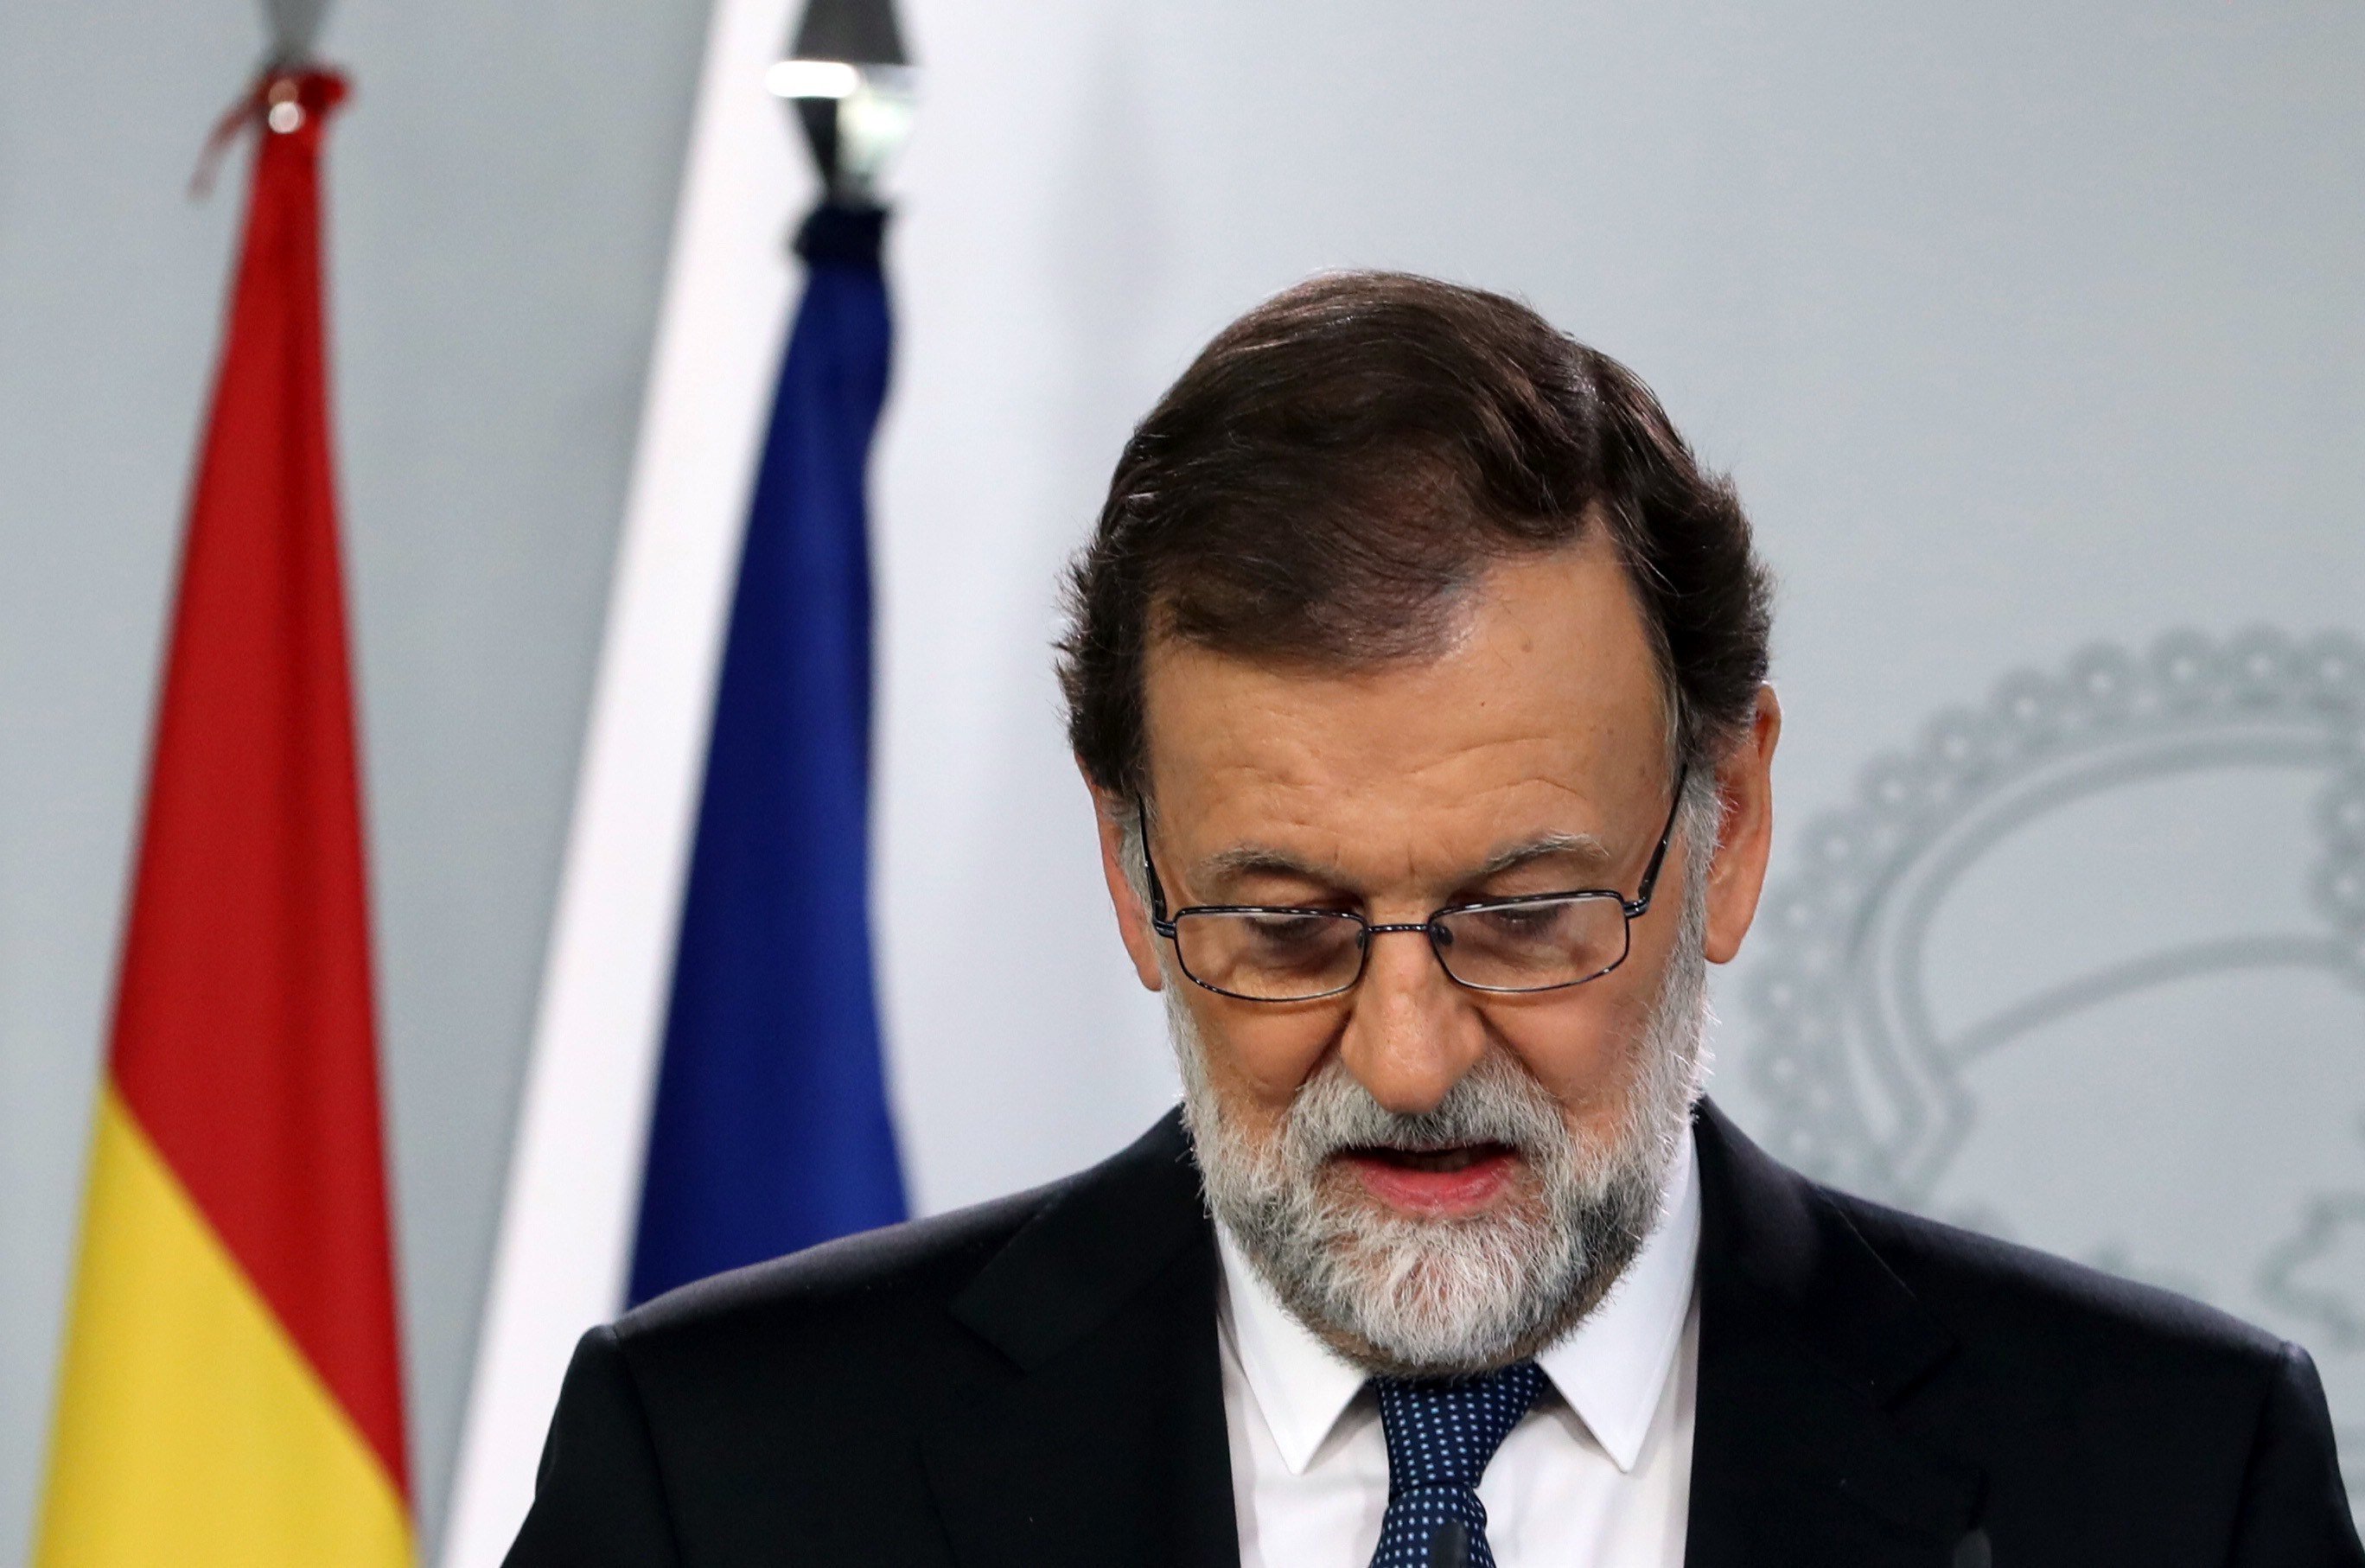 Rajoy gira l'esquena als ferits i afirma: "Hem fet el que havíem de fer"